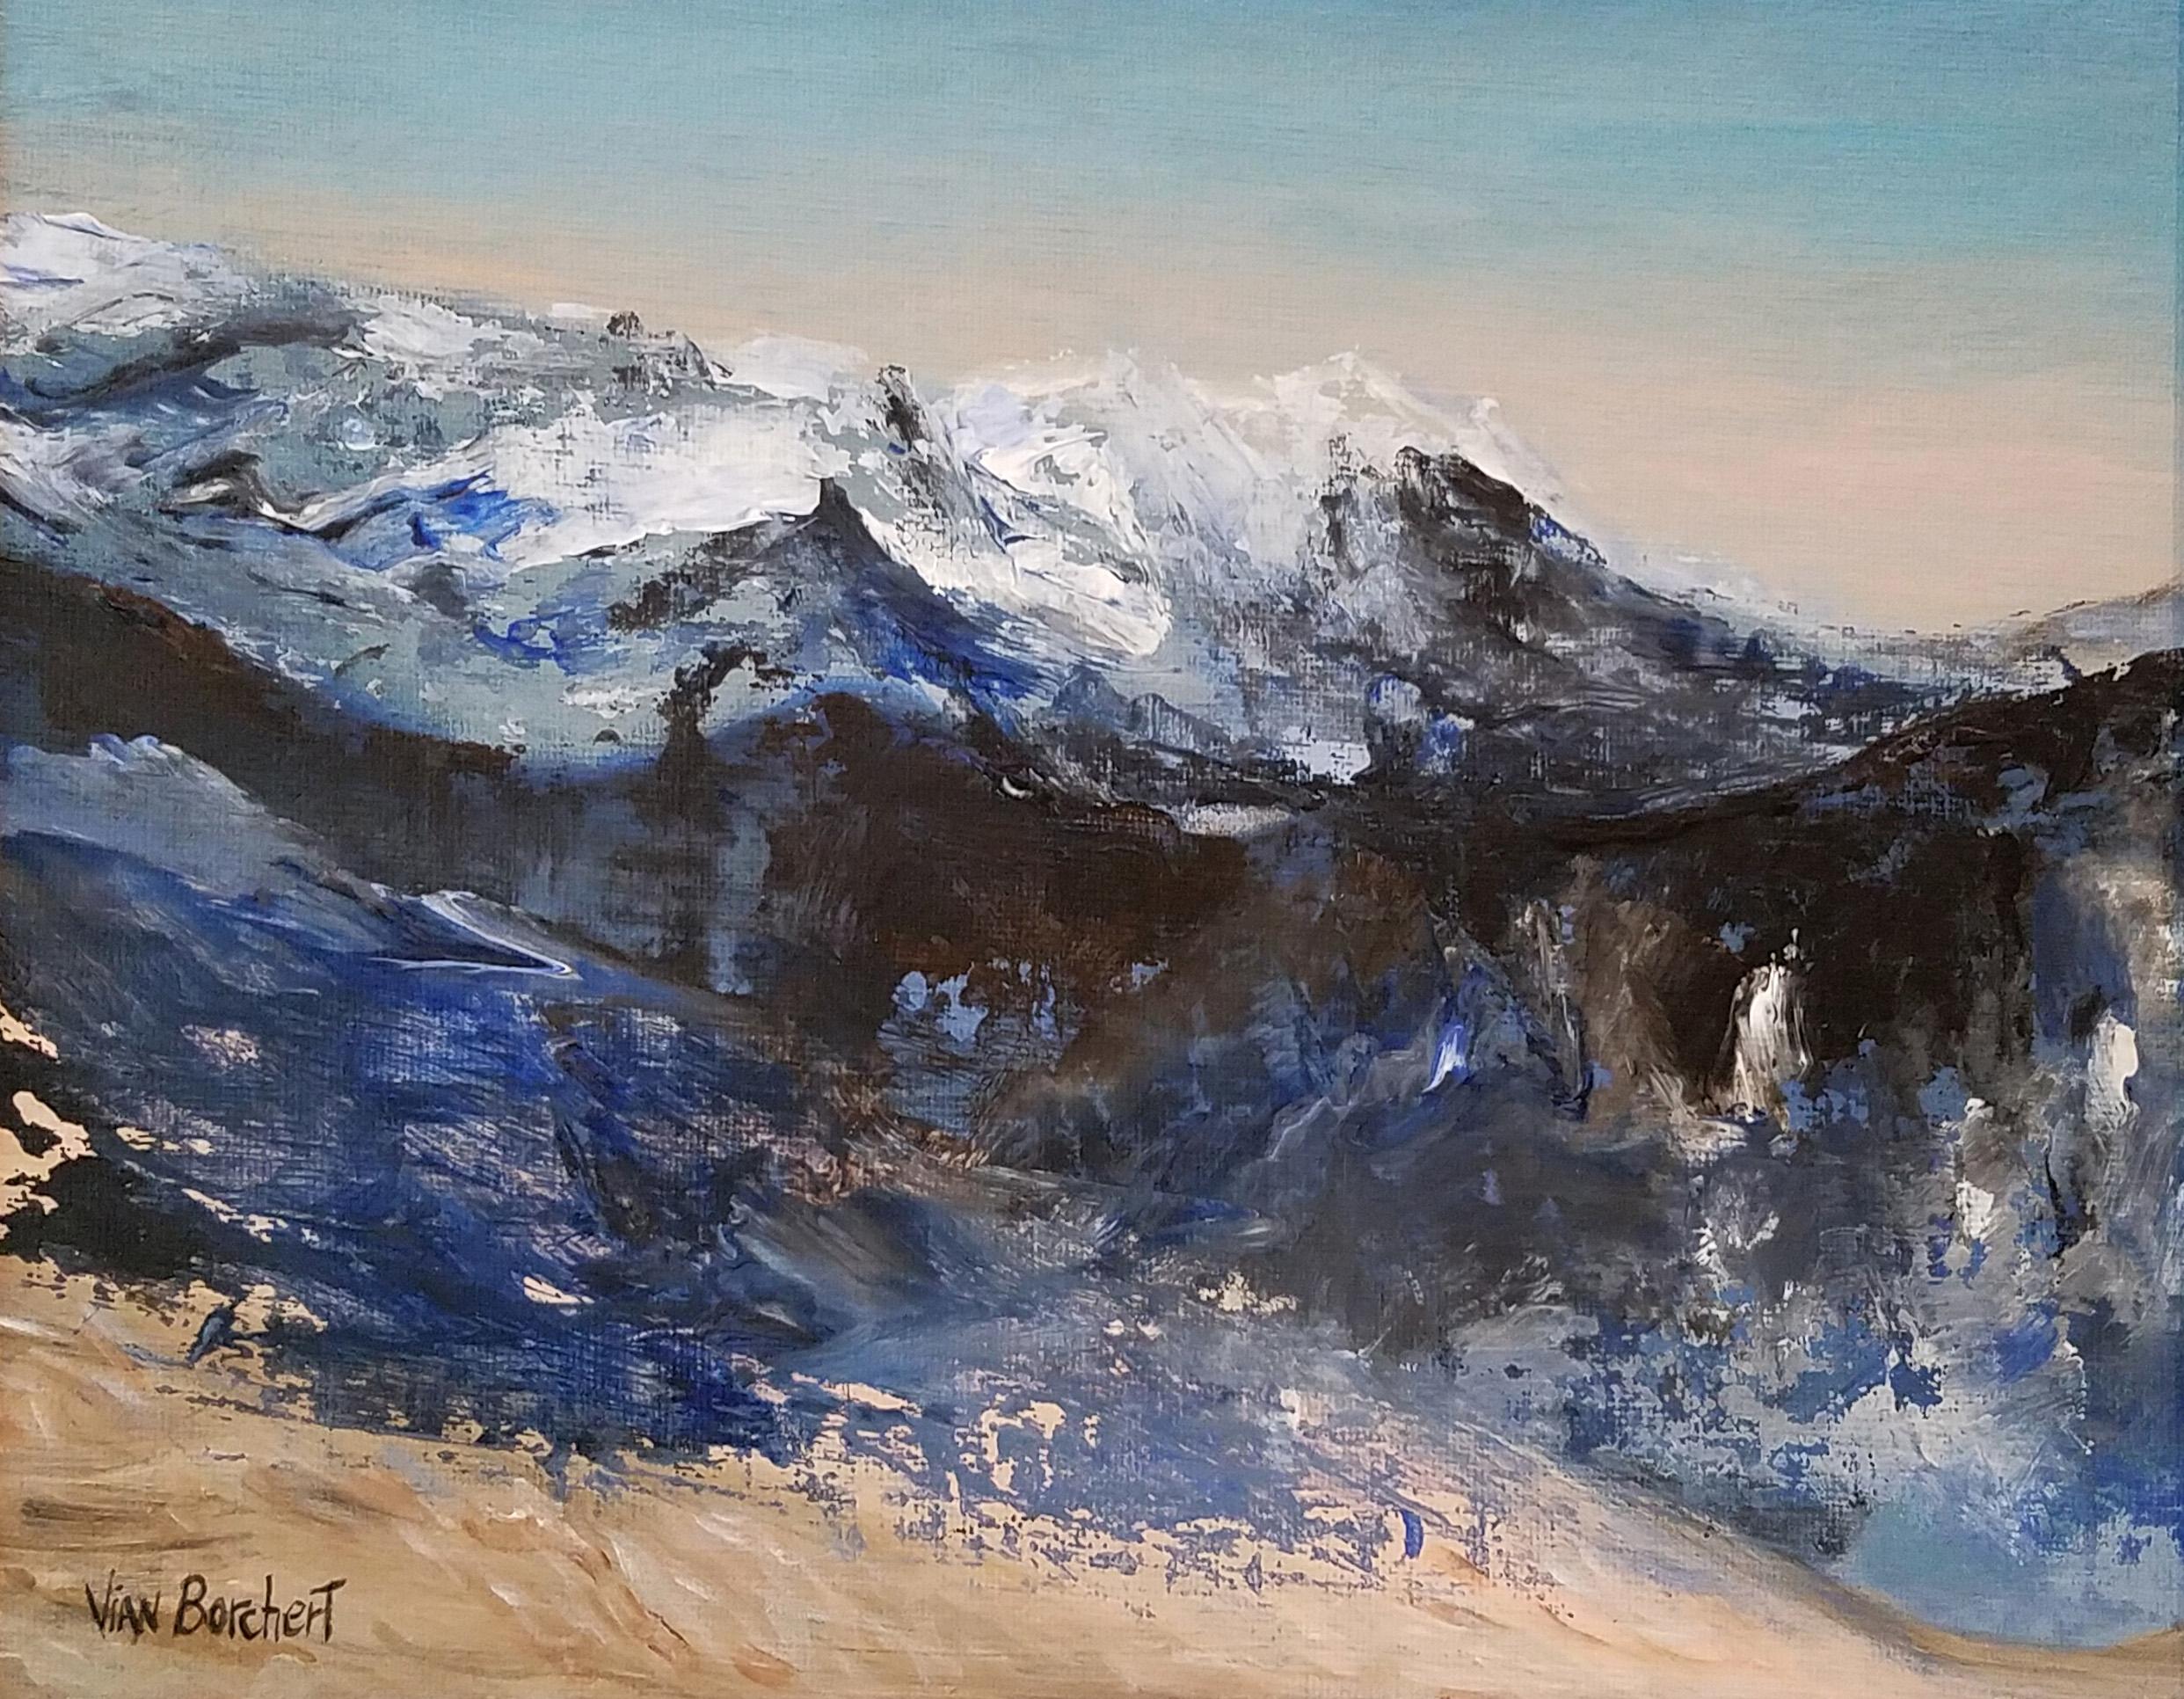 Vian Borchert Landscape Painting - “Snow Mountains” - Snow mountains painting, snow painting, snow mountains, white